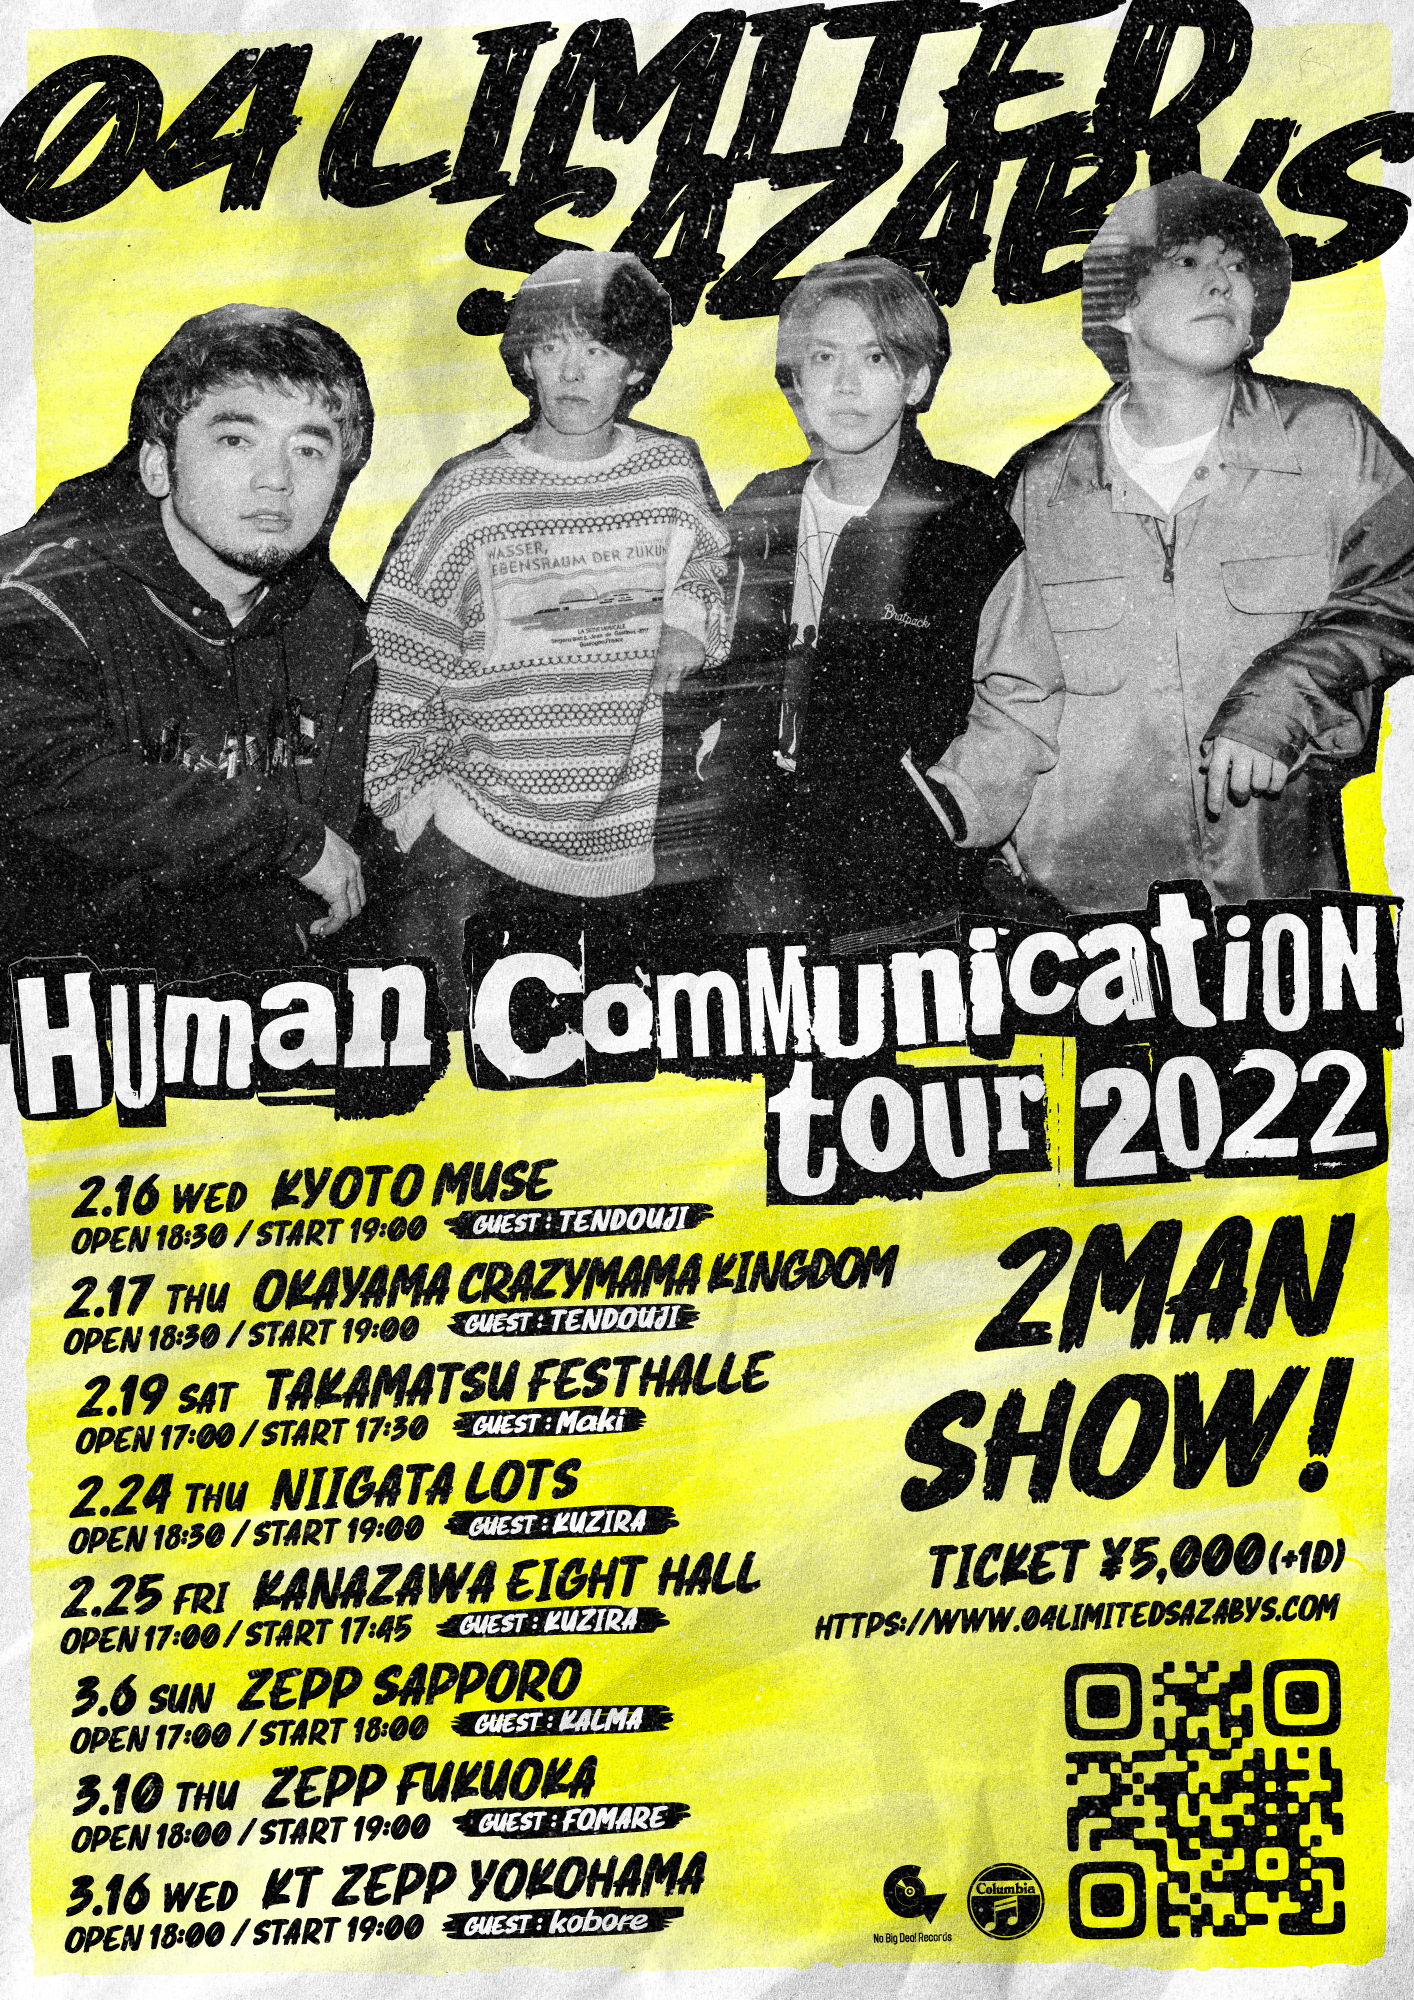 【香川】Human Communication tour 2022 (高松festhalle)